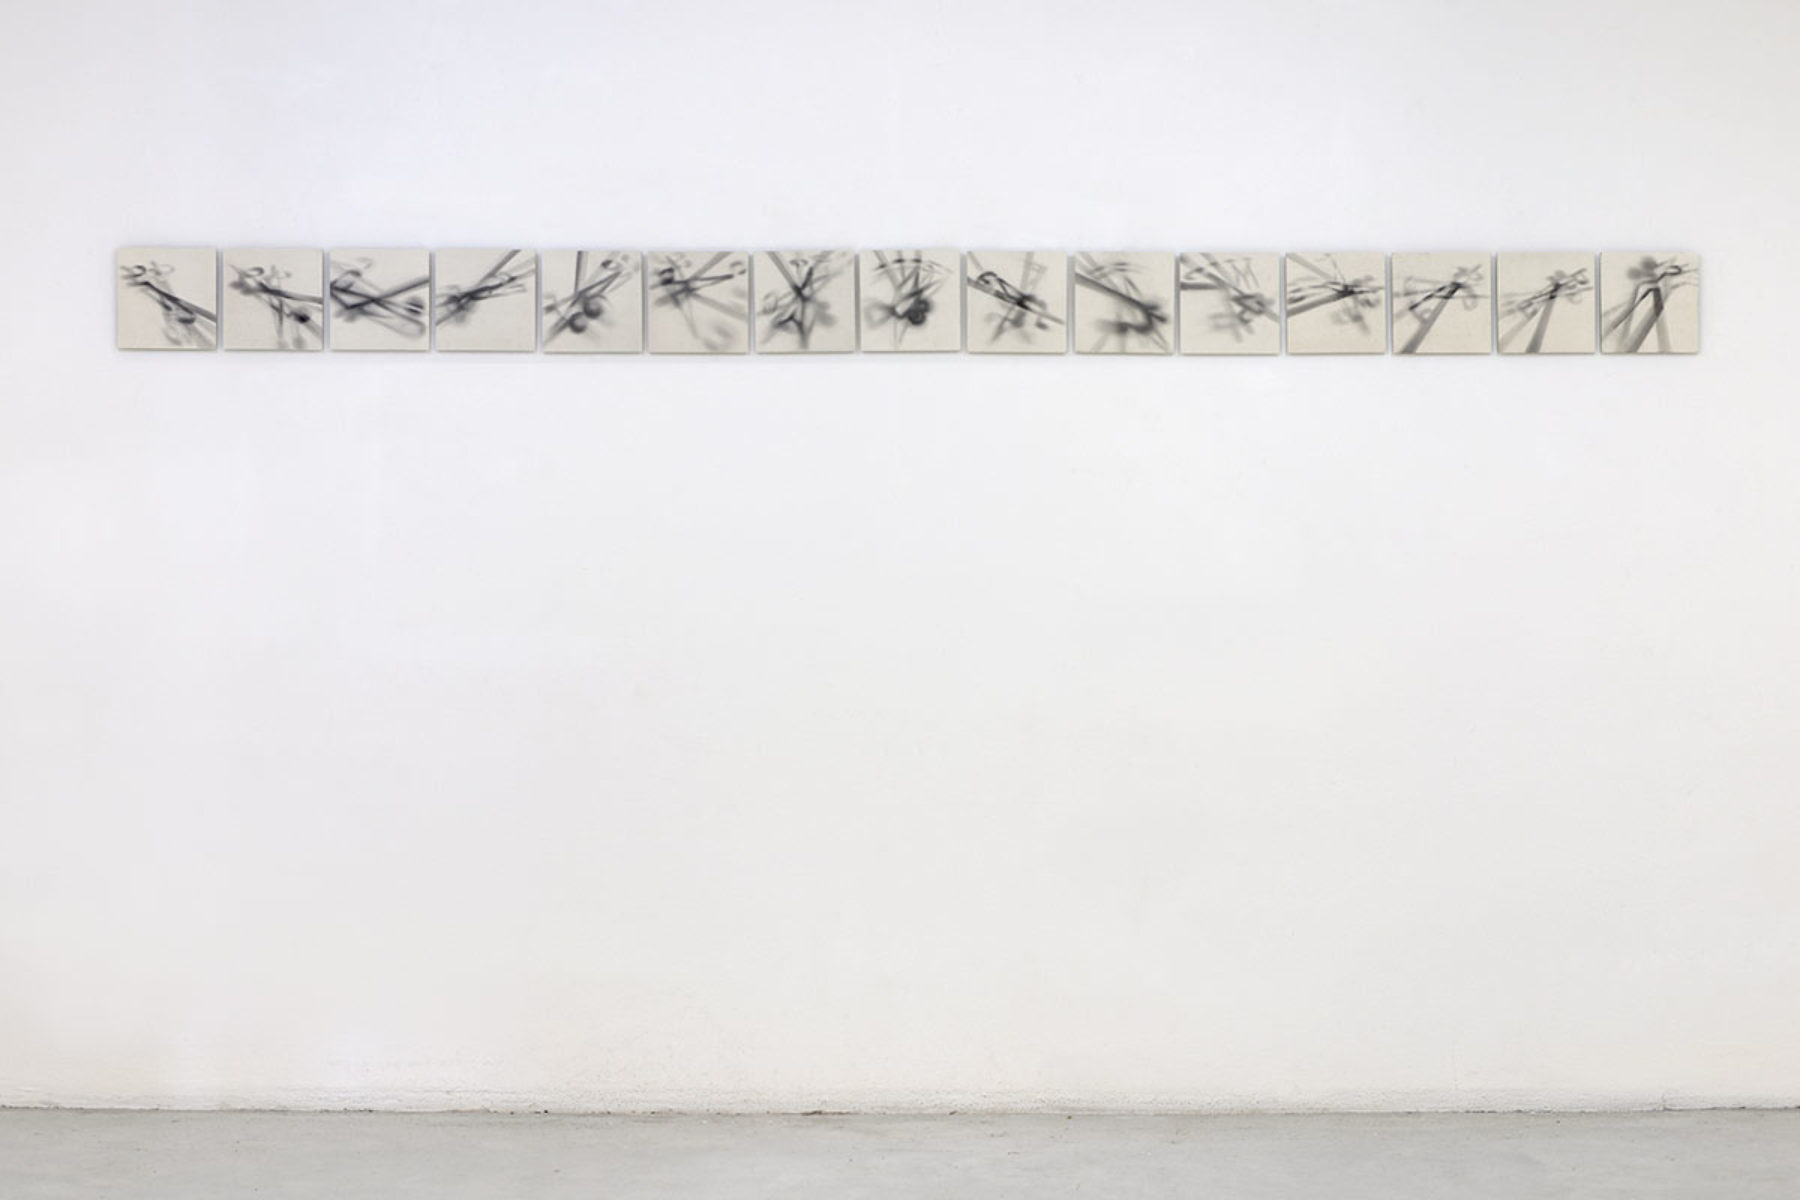 Antonio Marchetti Lamera, Raggi ombrosi, 2019, graphite on paper, 15 elements, 20 x 20 cm each, Studio la Città, Verona, ph. M.A. Sereni